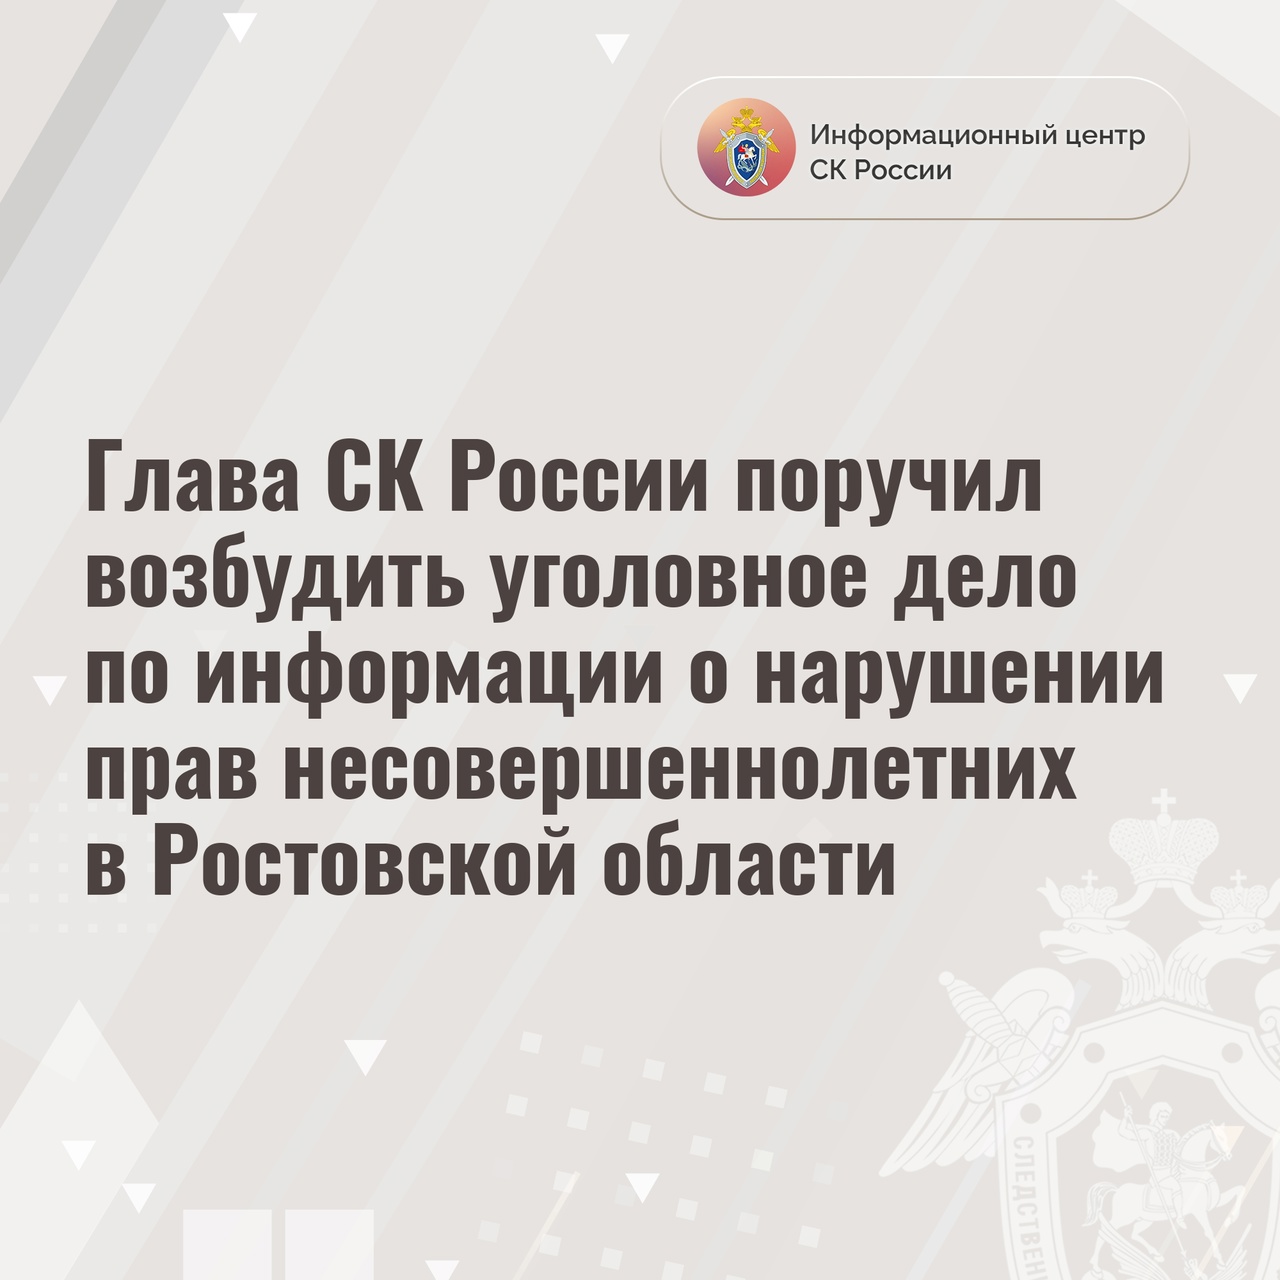 Александр Бастрыкин поручил возбудить уголовное дело по информации о нарушении прав несовершеннолетних в Ростовской области